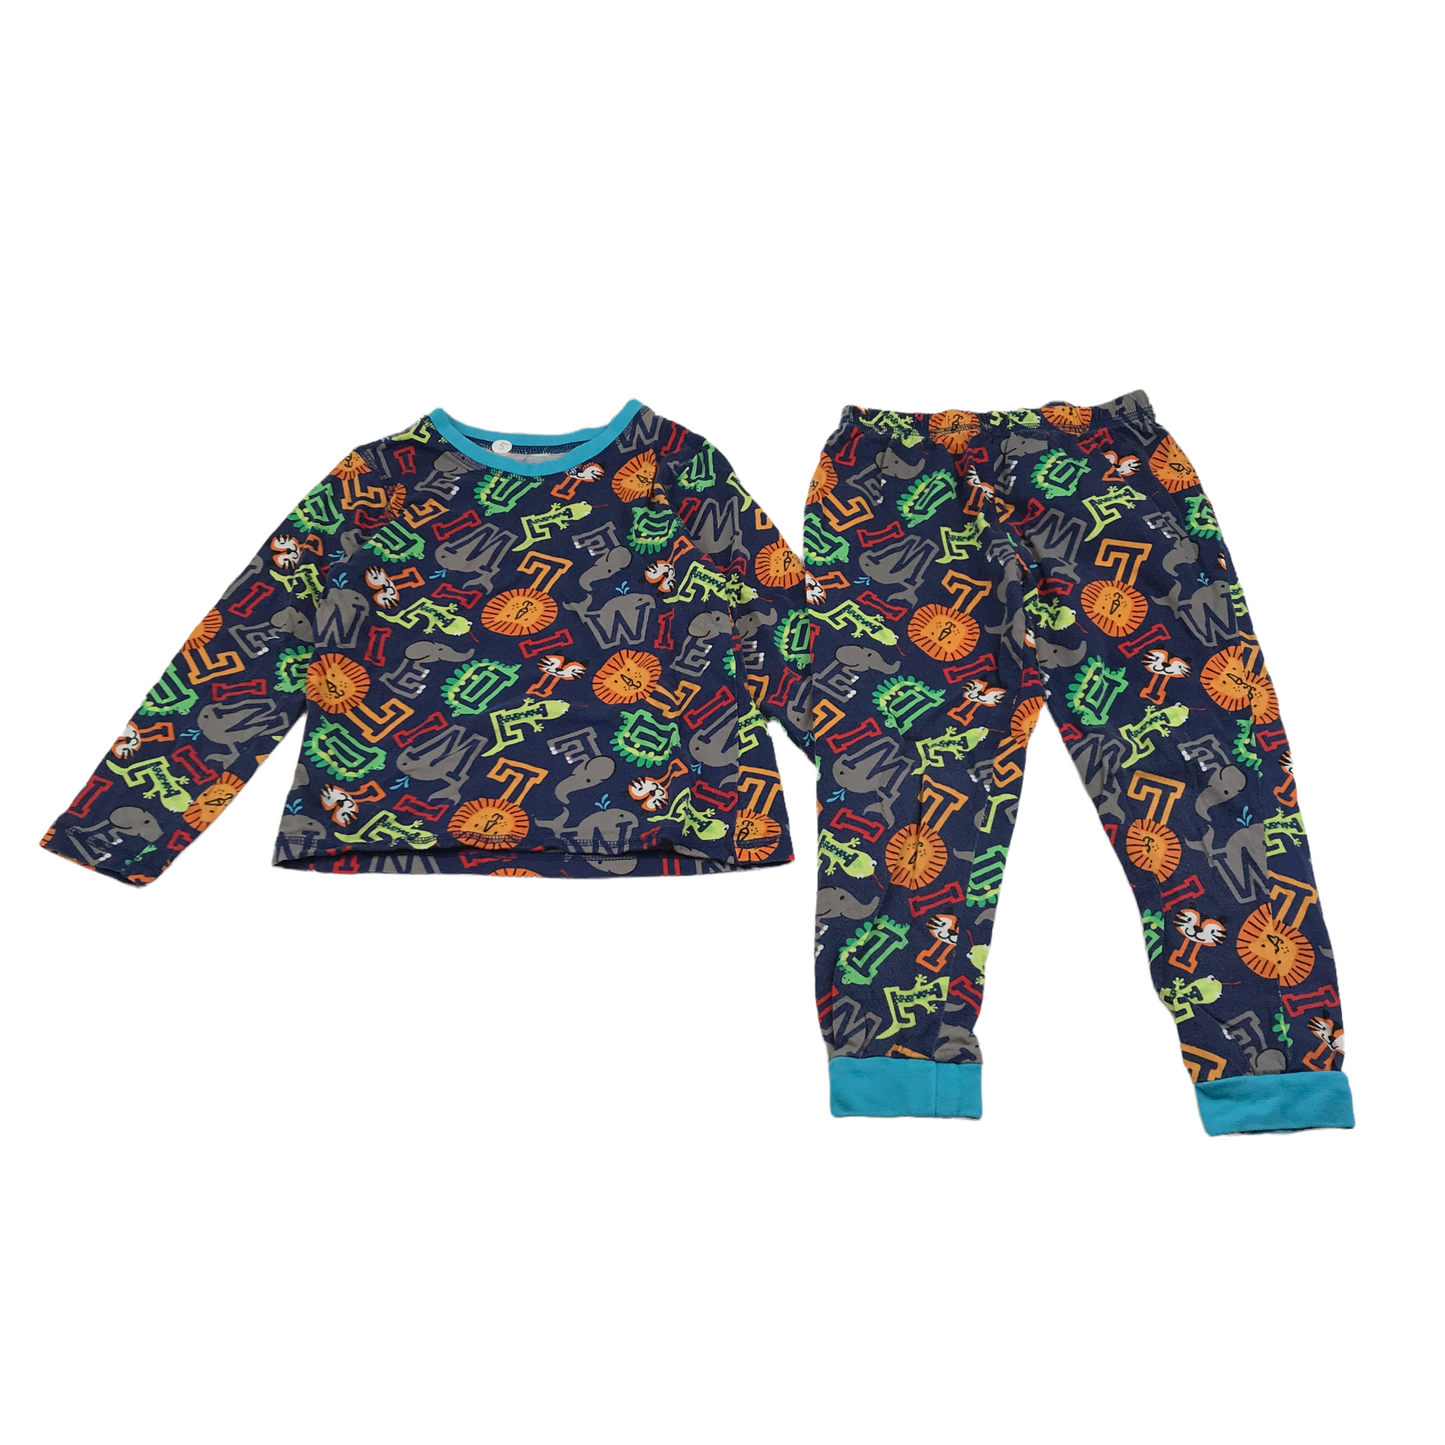 George Navy Multicolour Print Pyjama Set Age 5